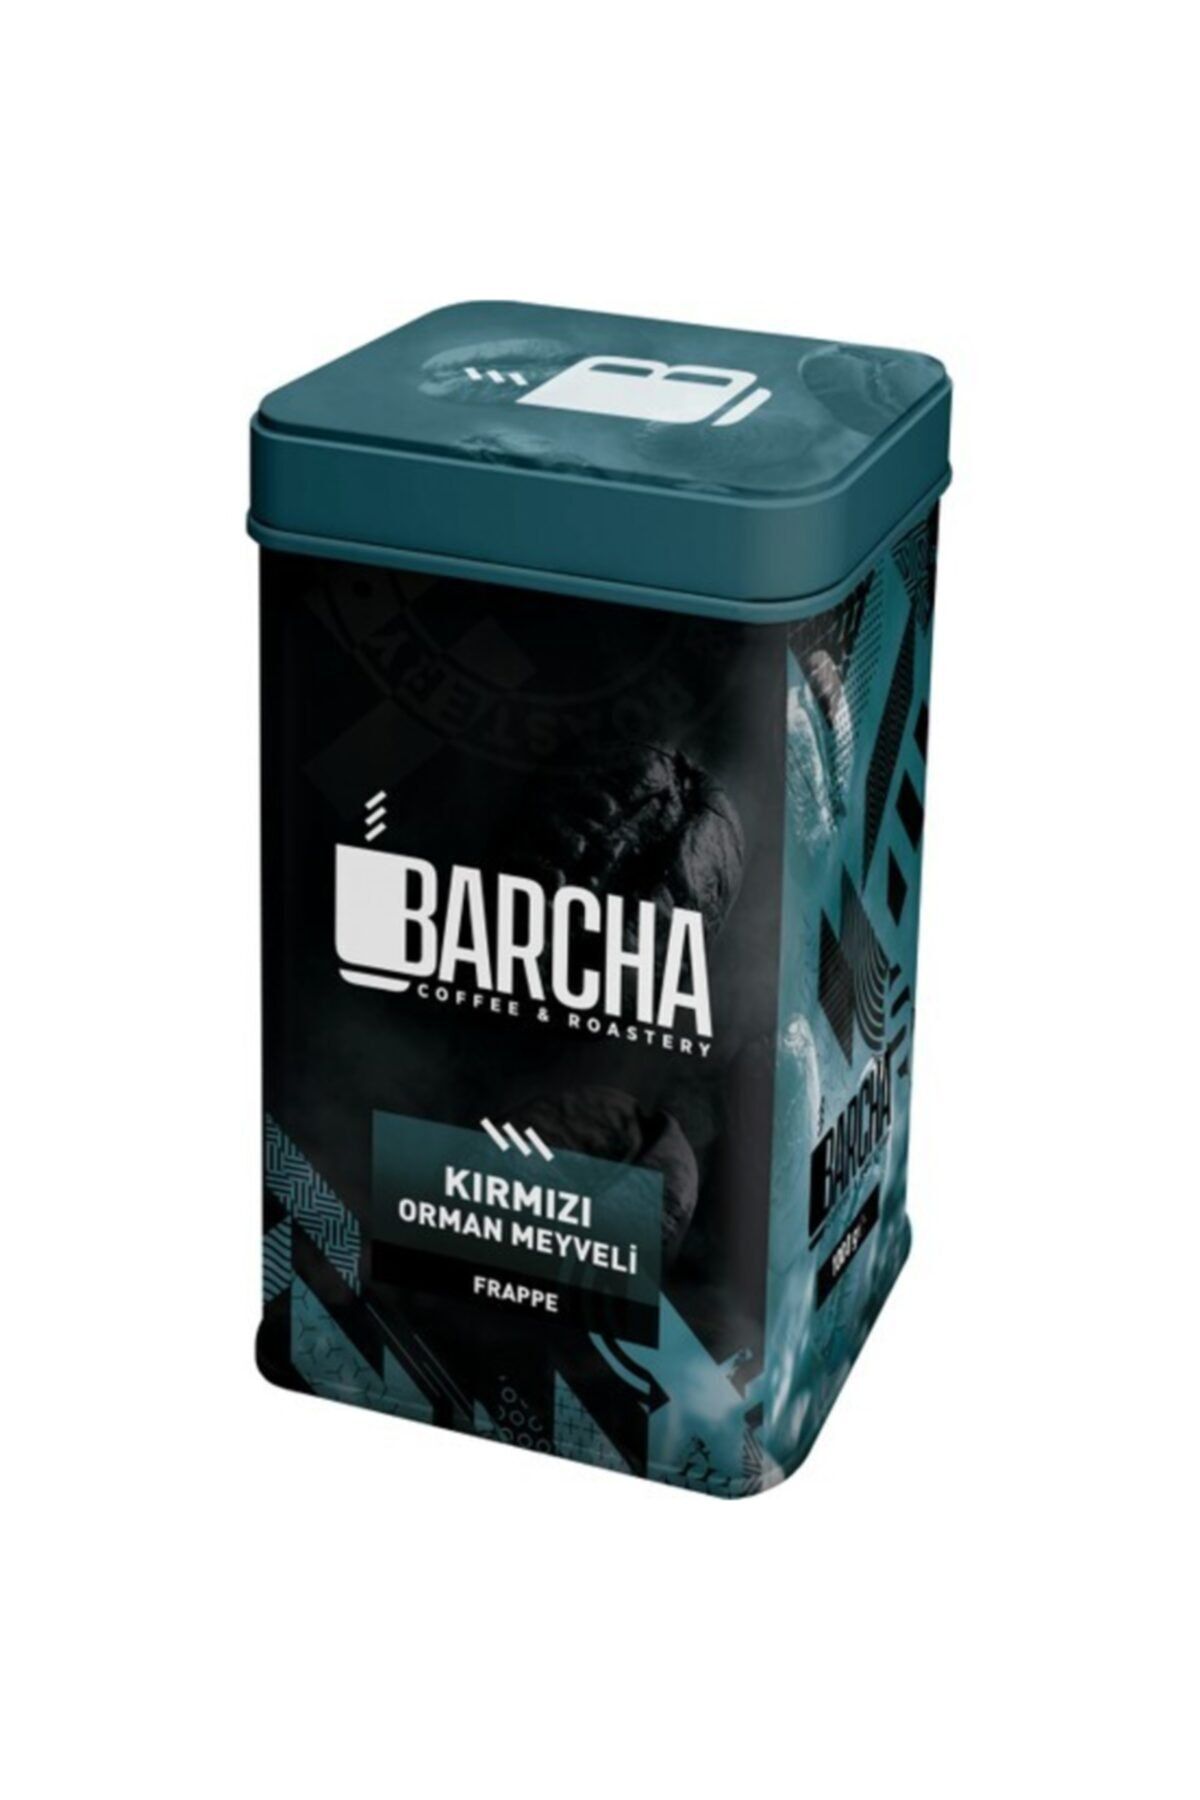 Barcha Coffee Kırmızı Orman Meyveli  (1000 gr)